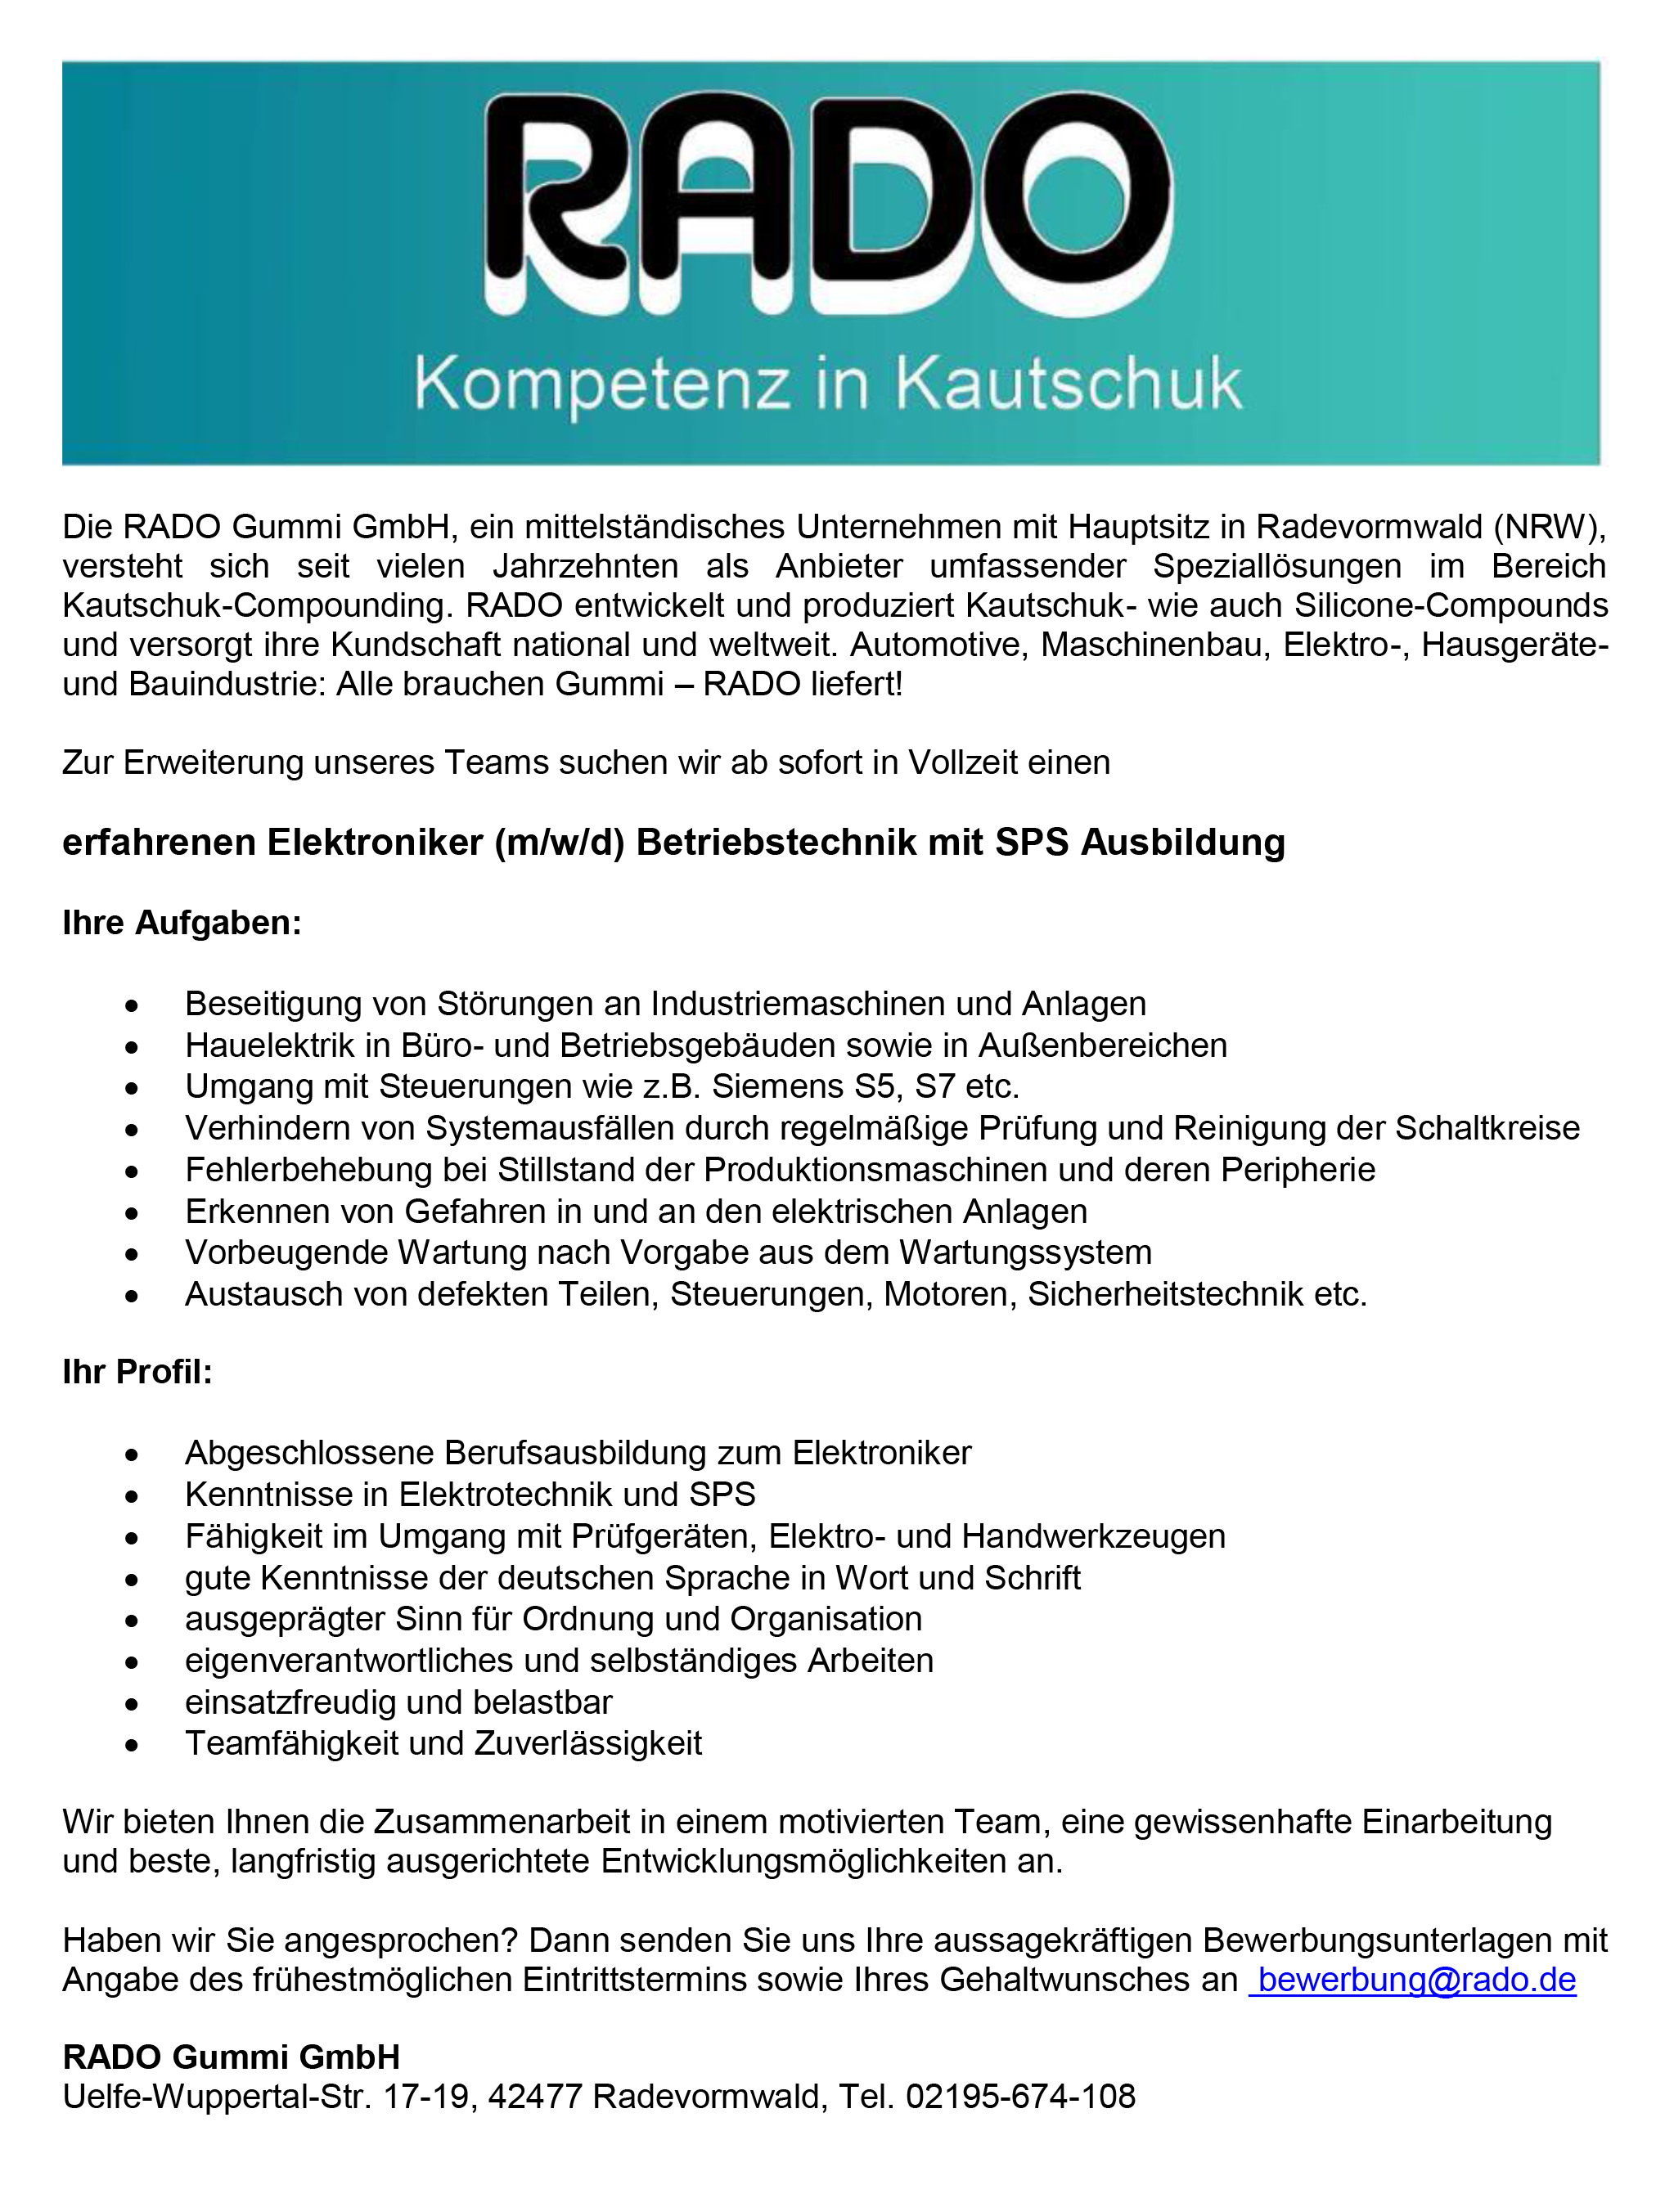 Rado Gummi GmbH Elektroniker/in für Betriebstechnik mit SPS Ausbildung Radevormwald stellencompass.de